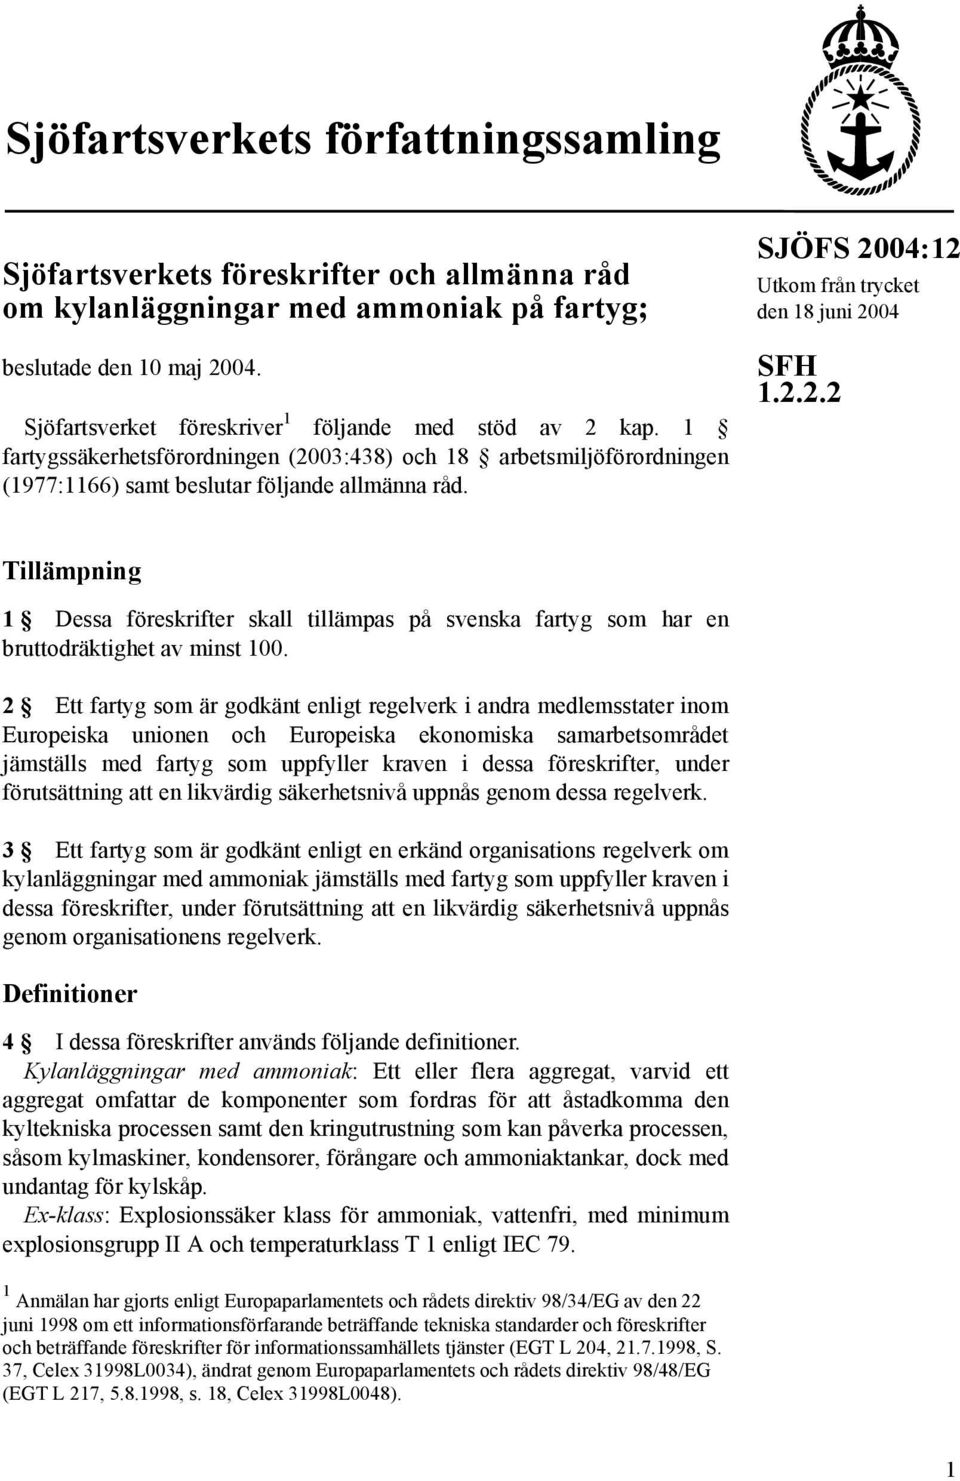 SJÖFS 2004:12 Utkom från trycket den 18 juni 2004 SFH 1.2.2.2 Tillämpning 1 Dessa föreskrifter skall tillämpas på svenska fartyg som har en bruttodräktighet av minst 100.